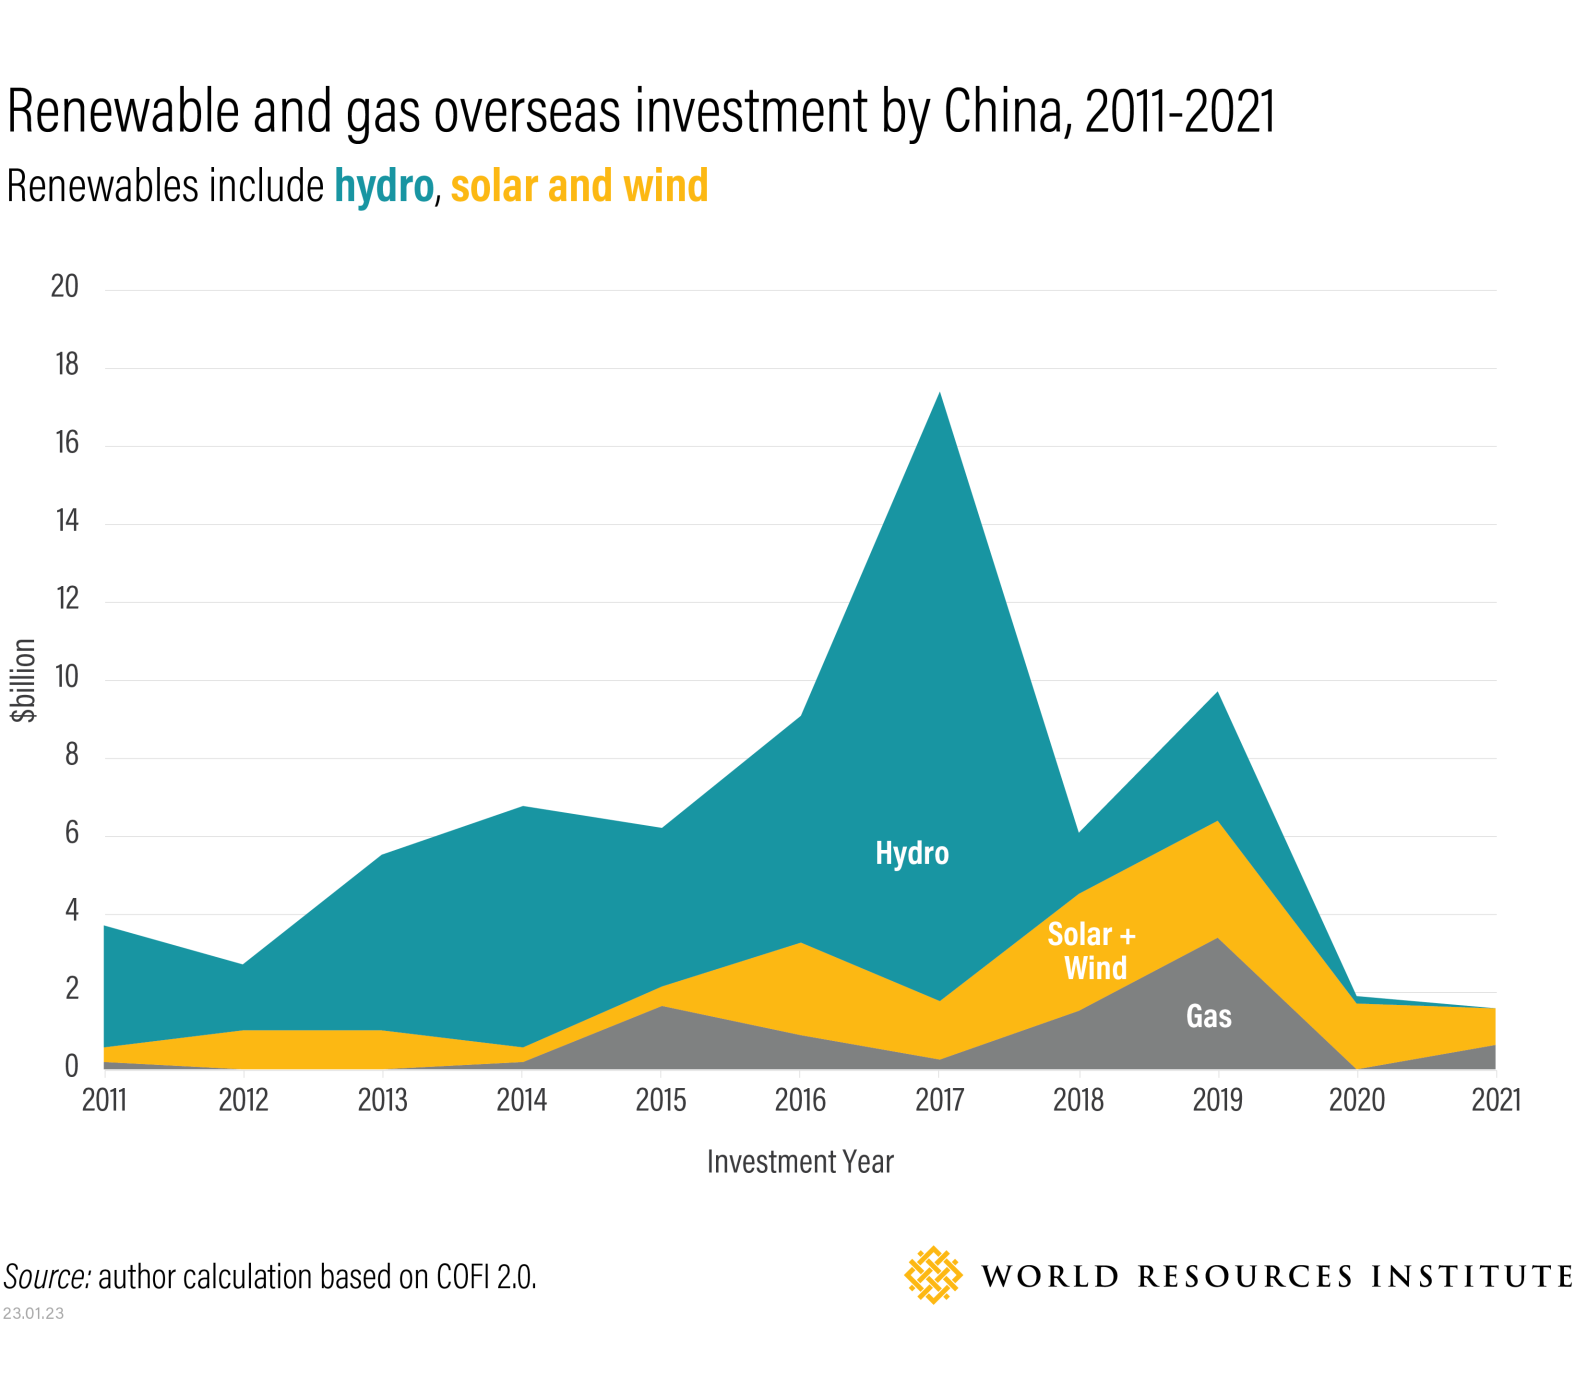 Inversión de China en energía renovable y gas en el extranjero 2011-2021